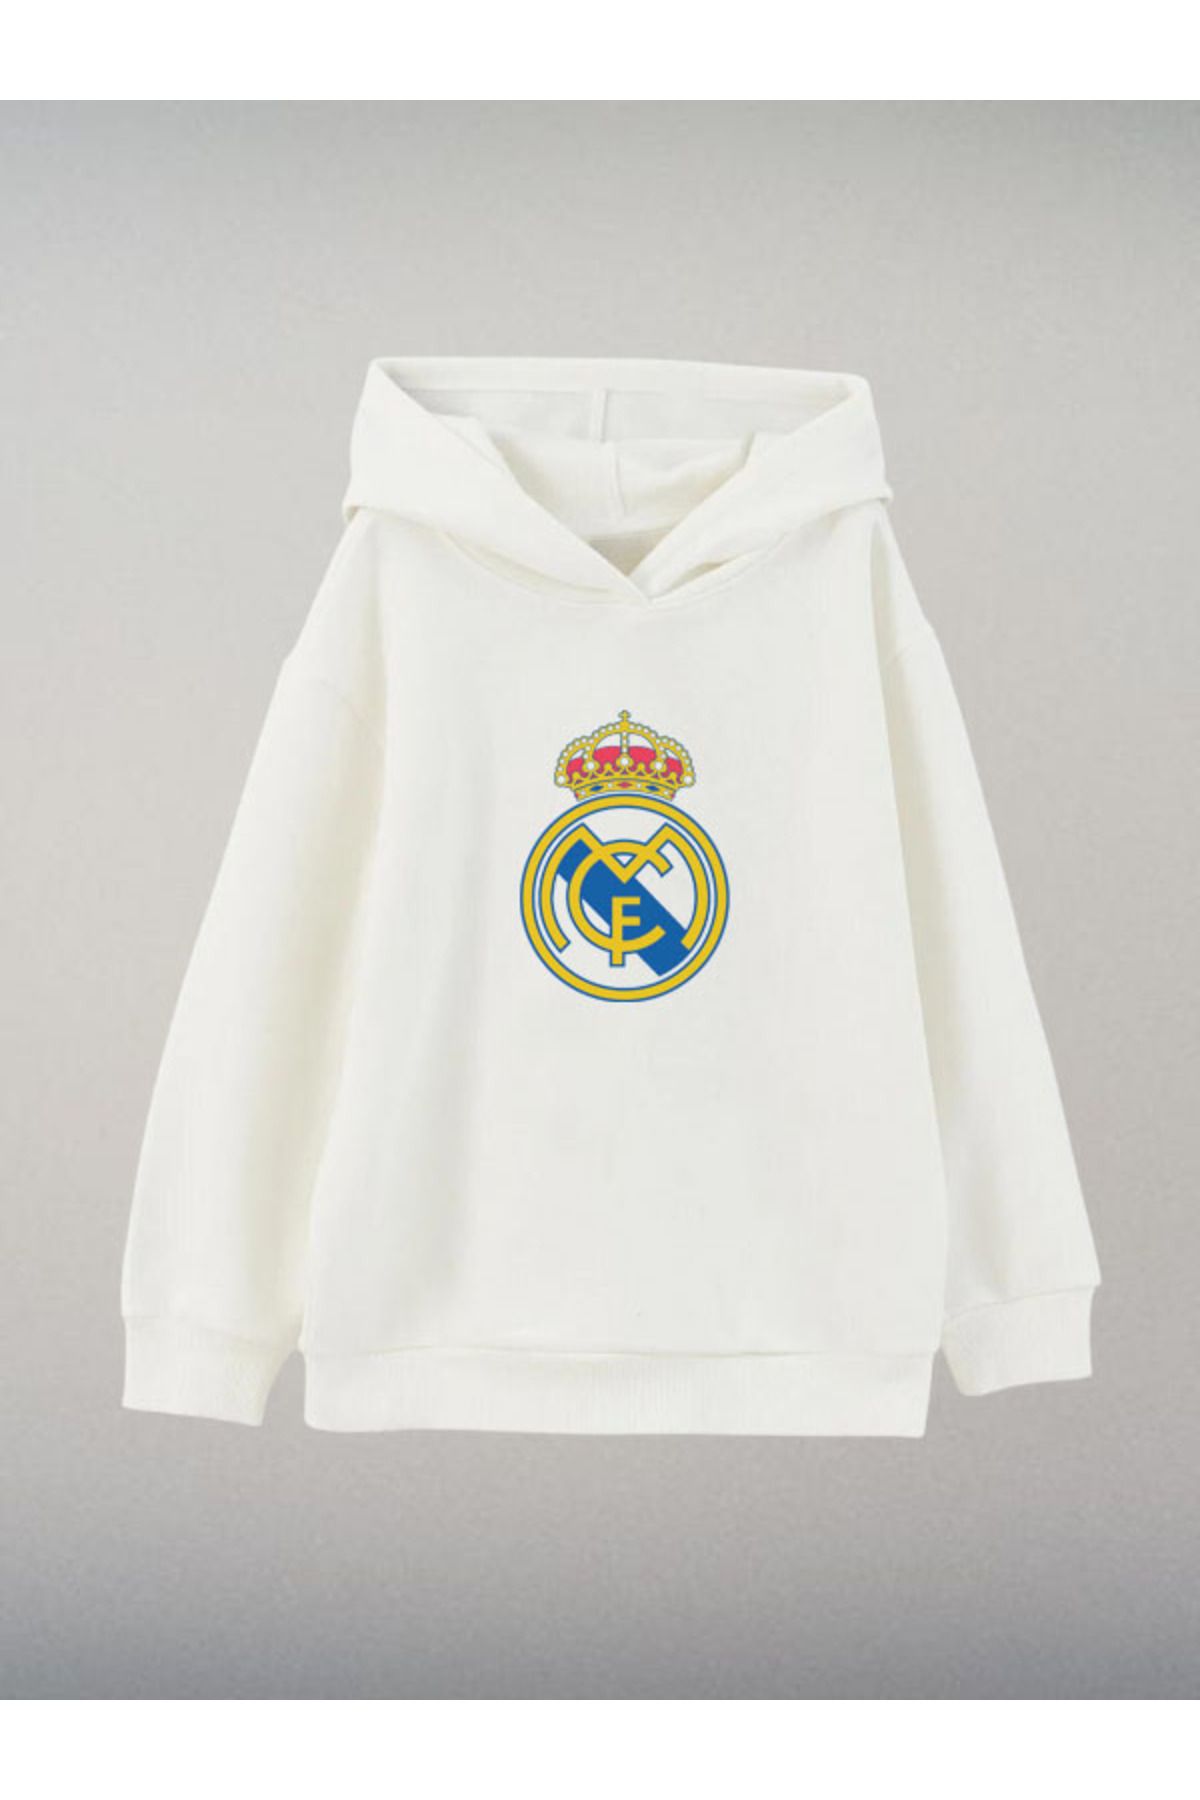 Darkia Real Madrid Futbol Takımı Özel Tasarım Baskılı Ekru Çocuk Kapşonlu Sweatshirt Hoodie